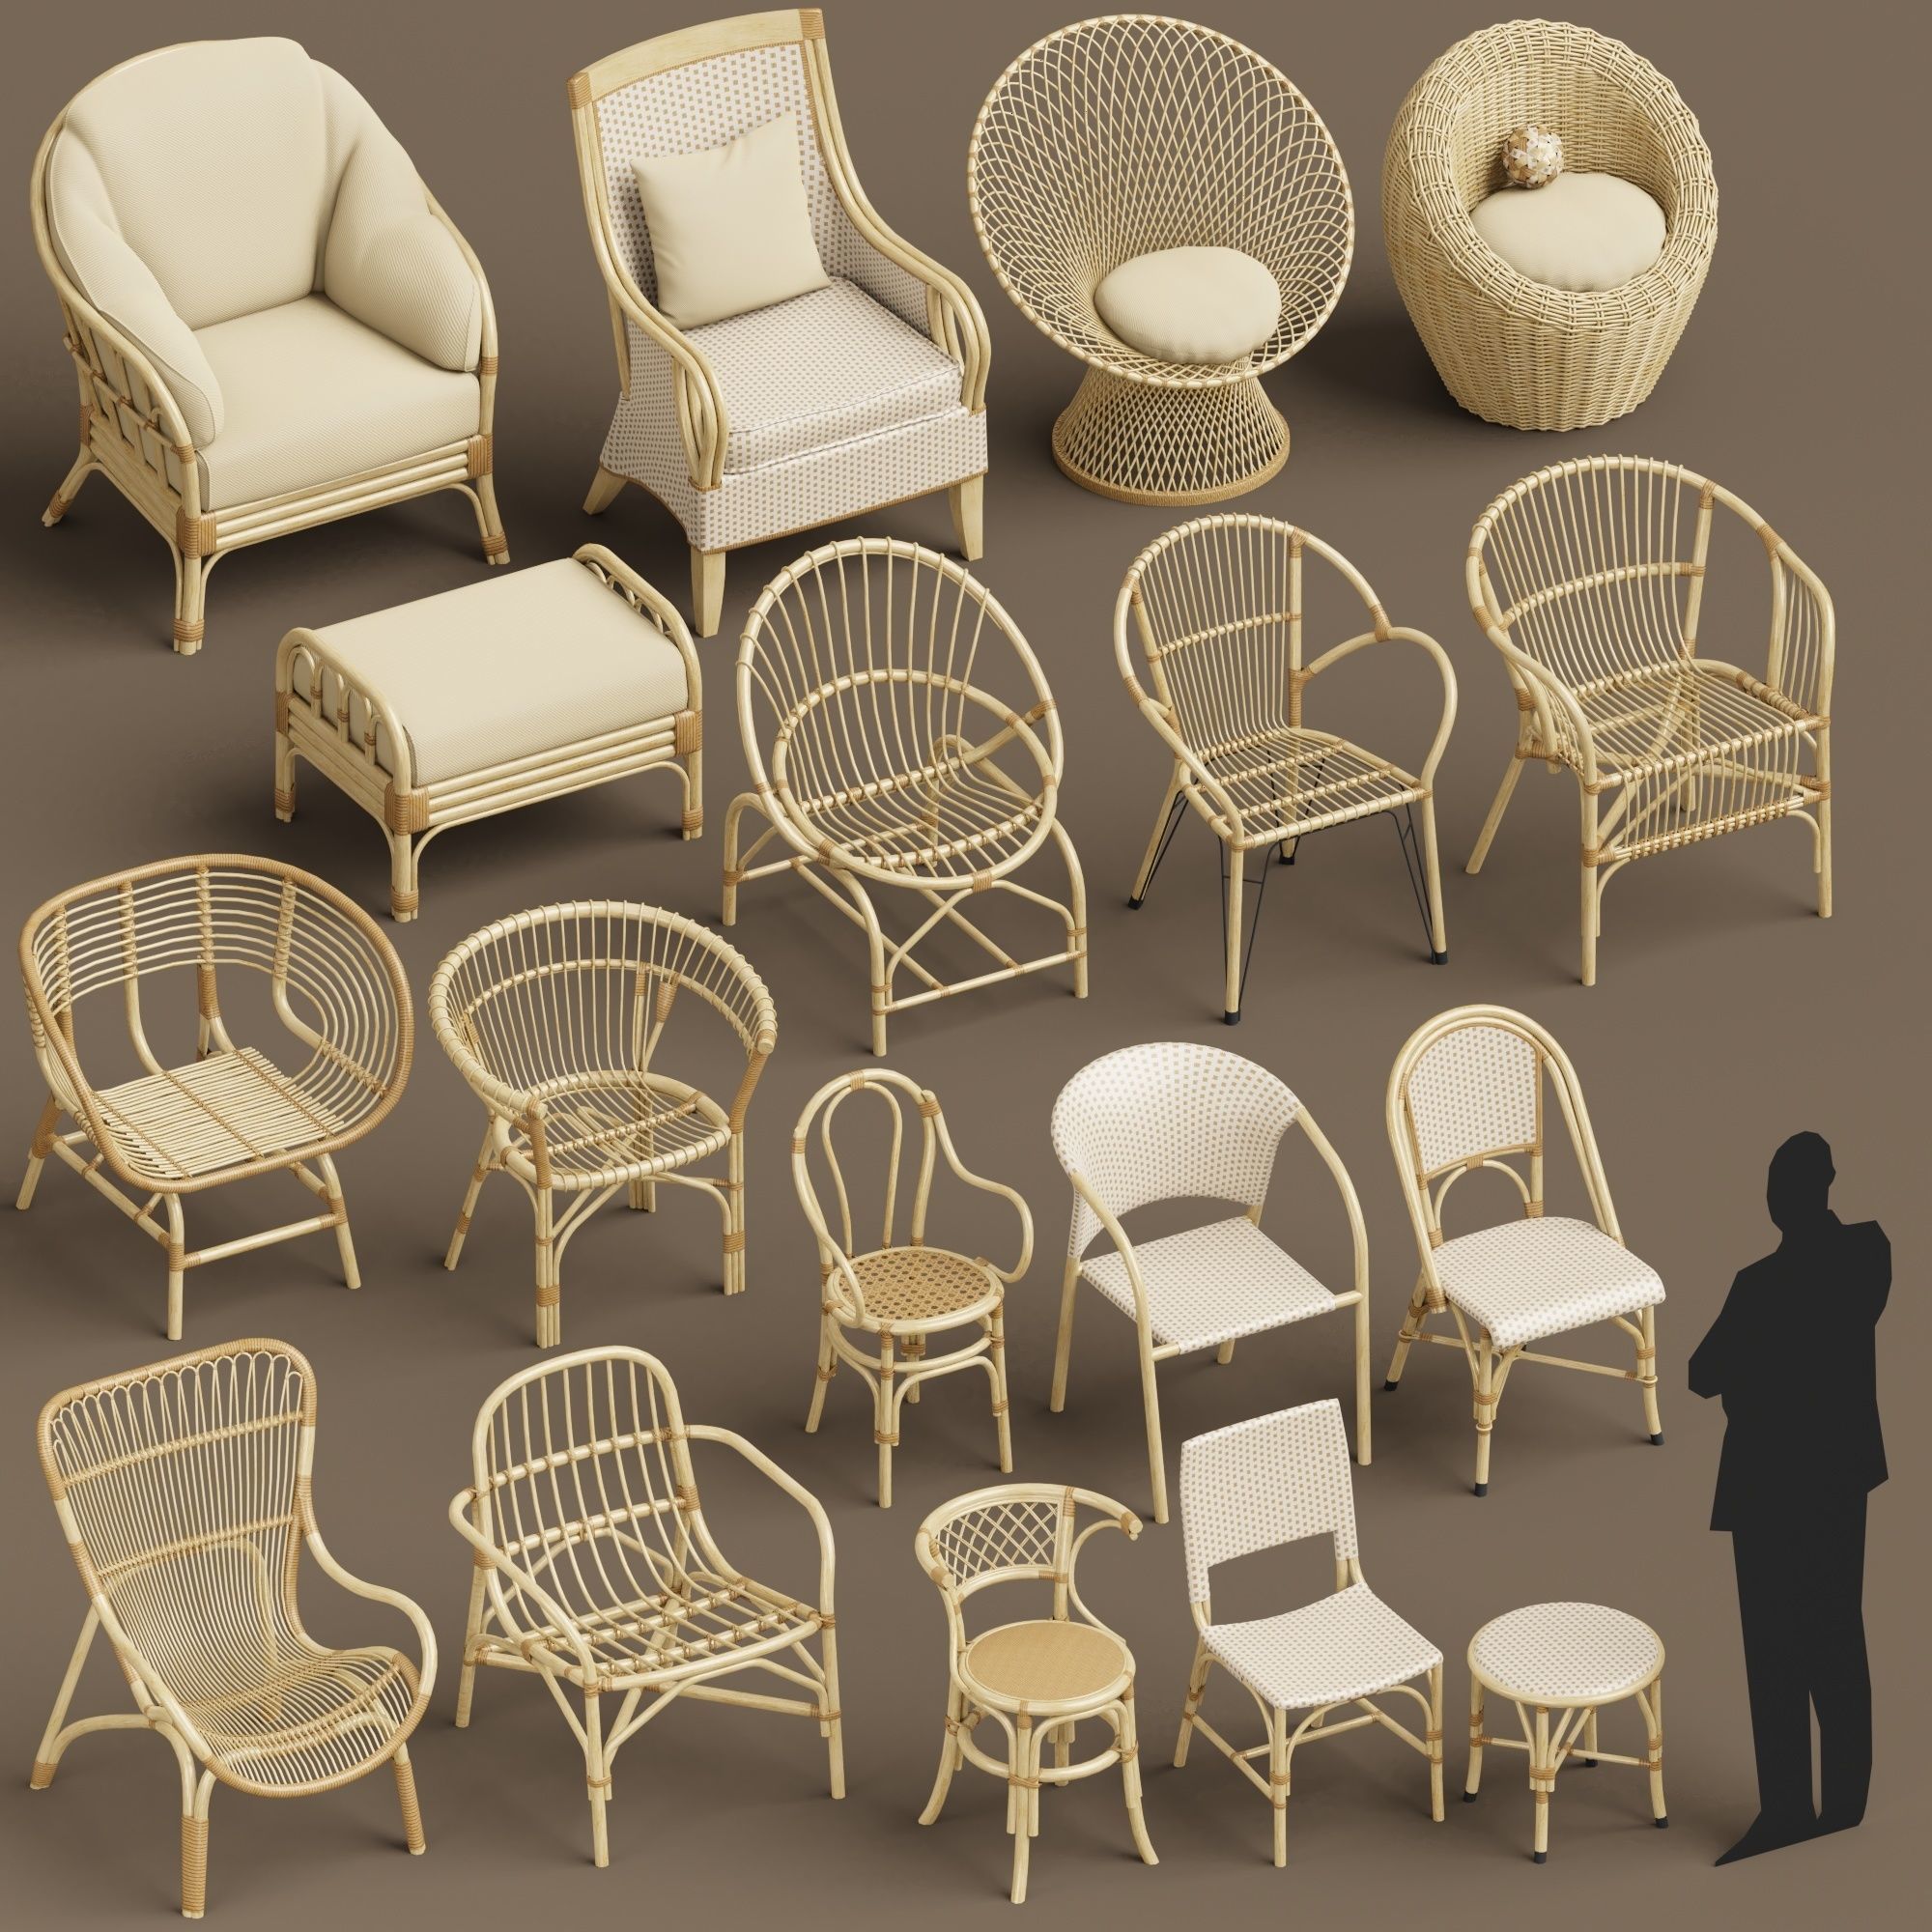 مدل سه بعدی صندلی حصیری - 2